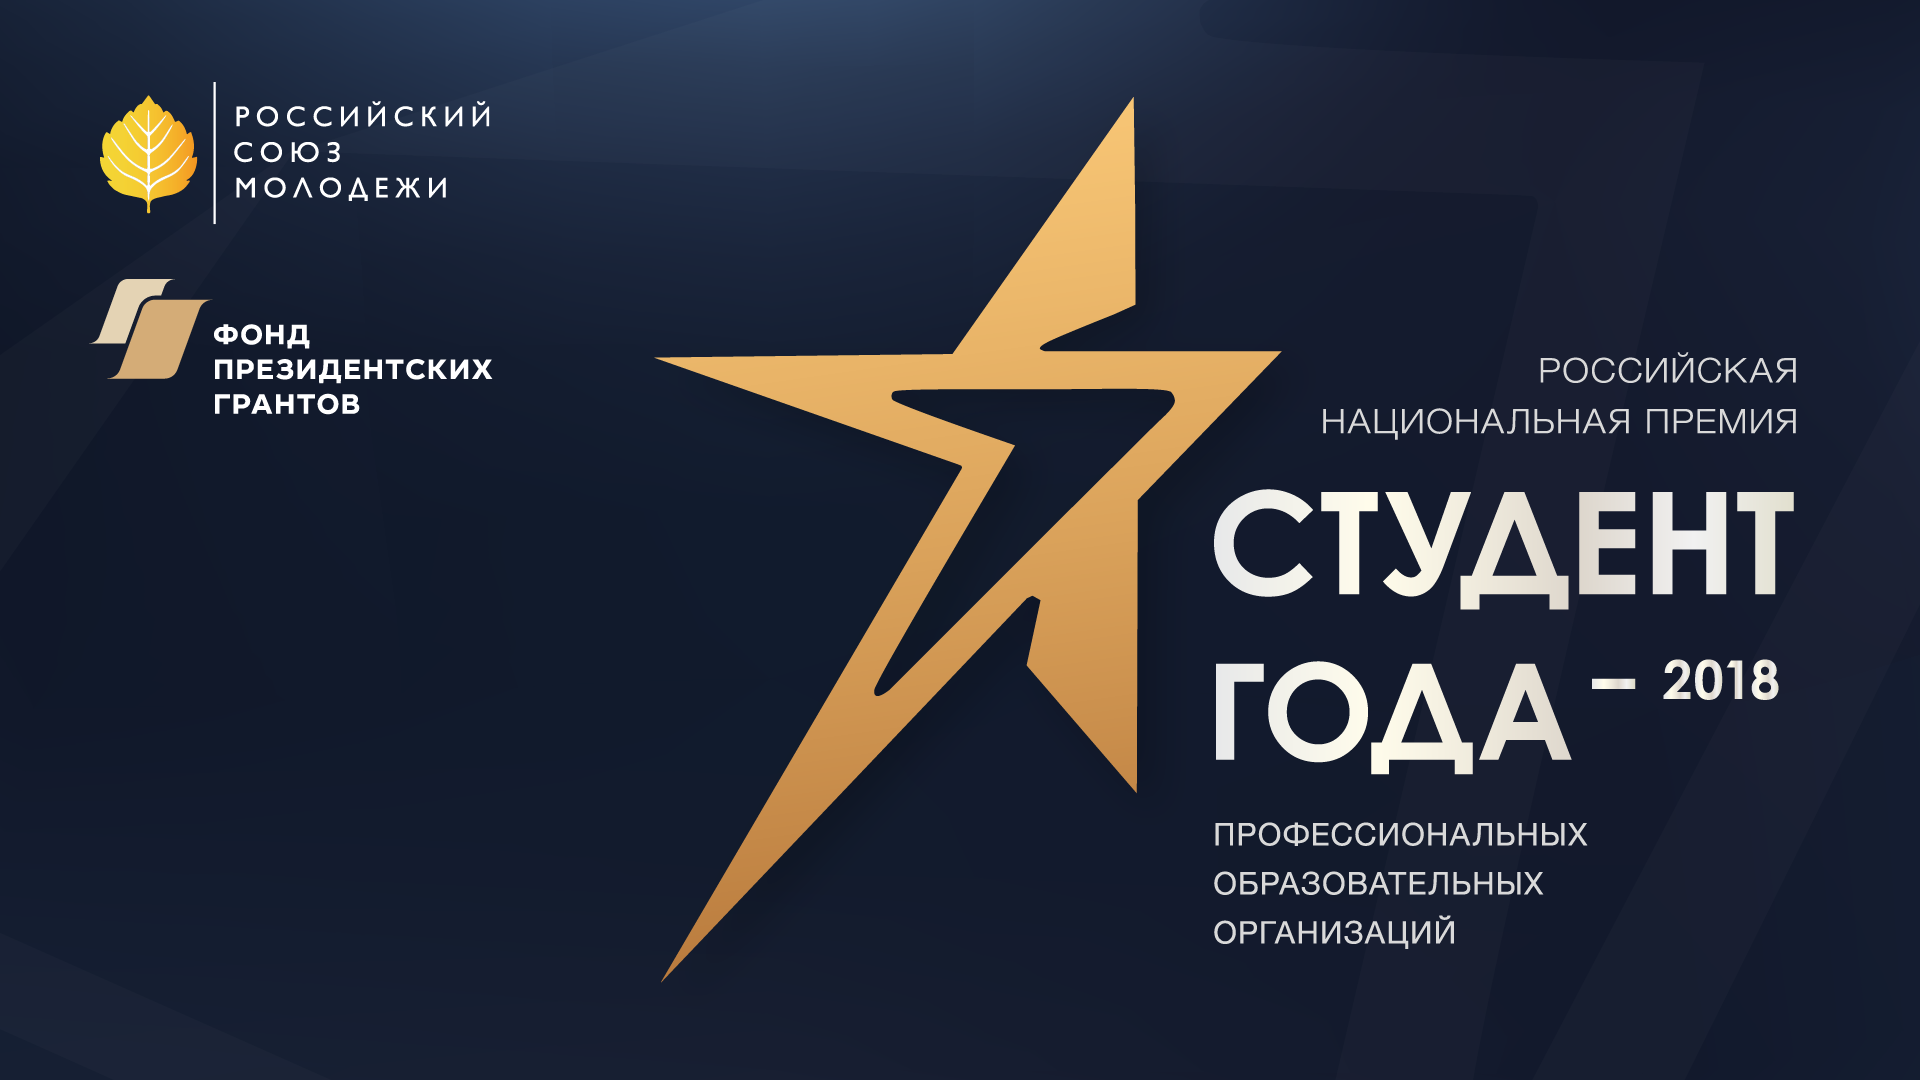 Заседание оргкомитета Российской национальной премии «Студент года – 2018» профессиональных образовательных организаций